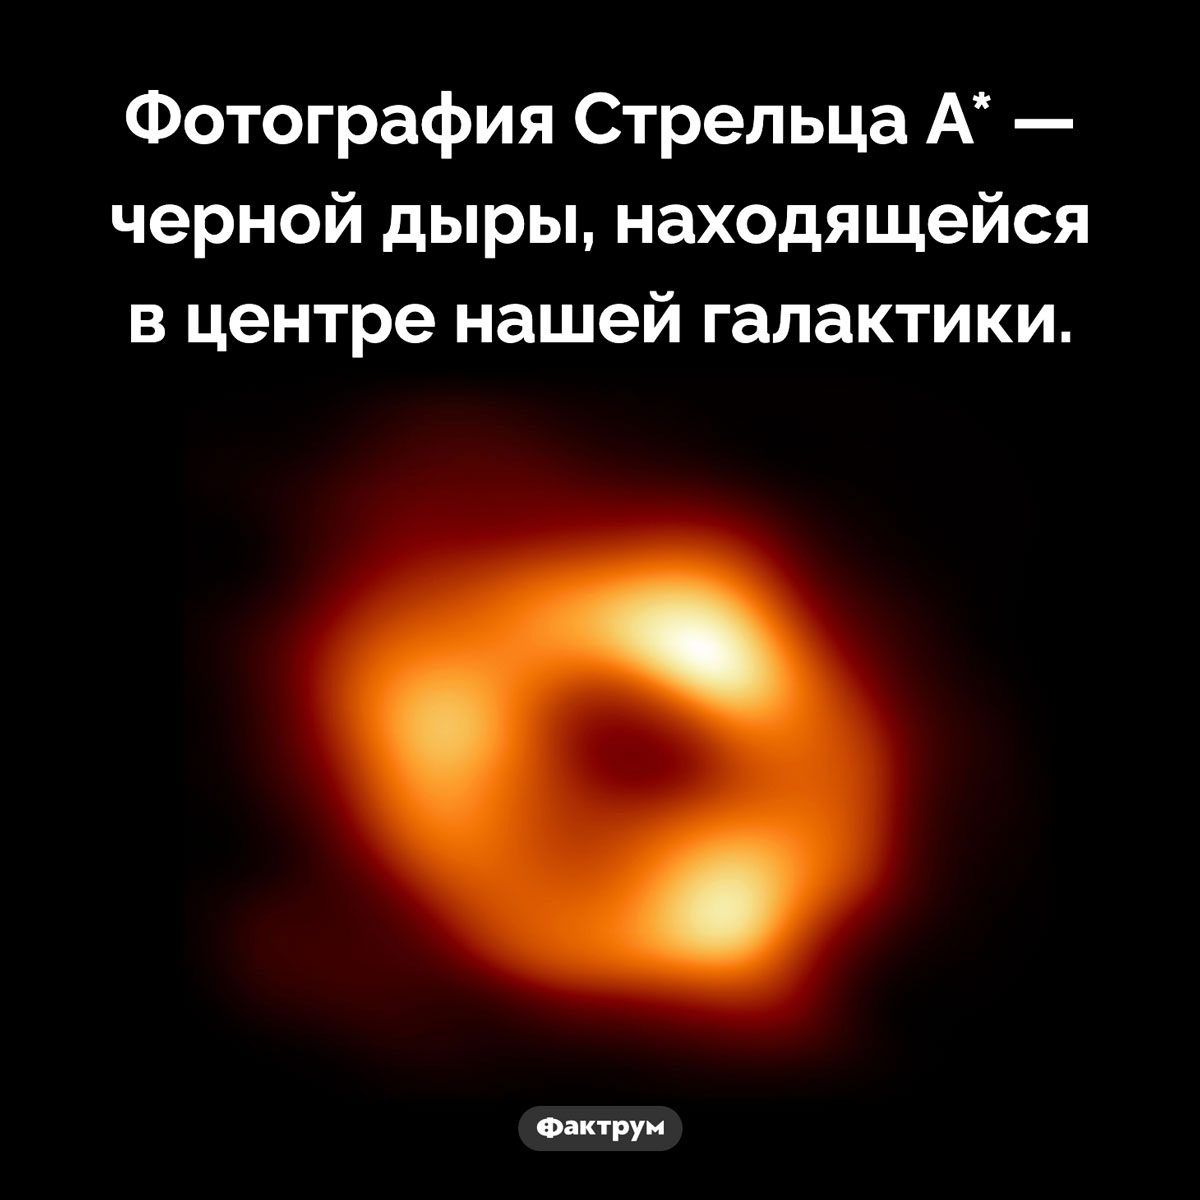 Фотография Стрельца А*. Фотография Стрельца A* — черной дыры, находящейся в центре нашей галактики.